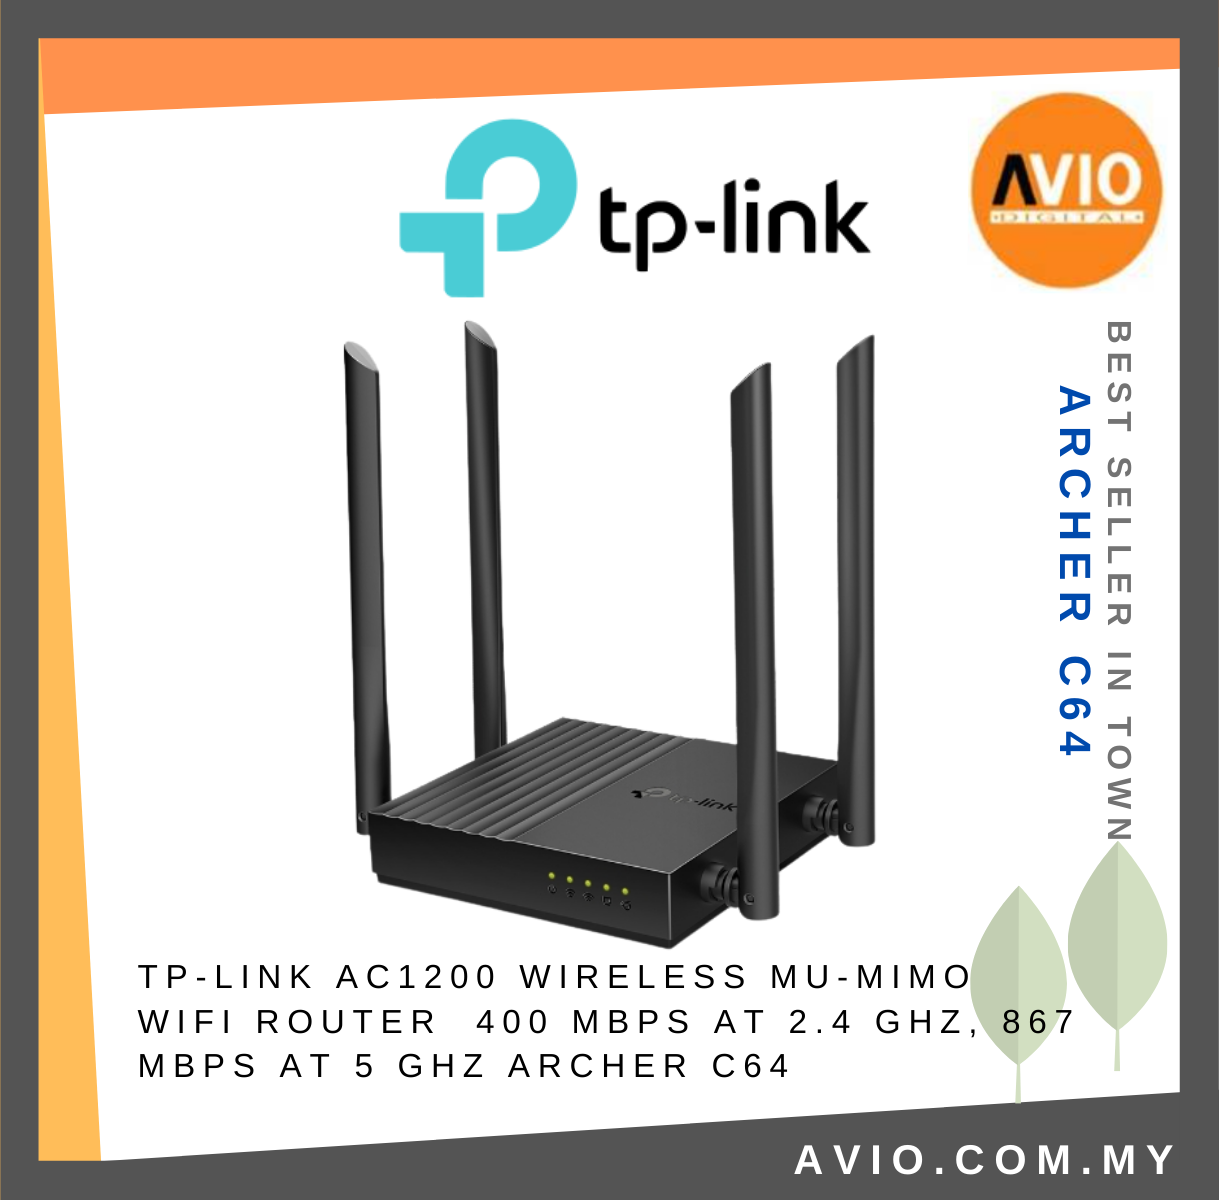 TP-LINK Tplink AC1200 Wireless MU MIMO Wifi Router 4× Antennas 5× Gigabit  Port Dual Band 2.4GHz 5GHz AP Mode Archer C64 Network Johor Bahru (JB),  Kempas, Johor Jaya Supplier, Suppliers, Supply, Supplies